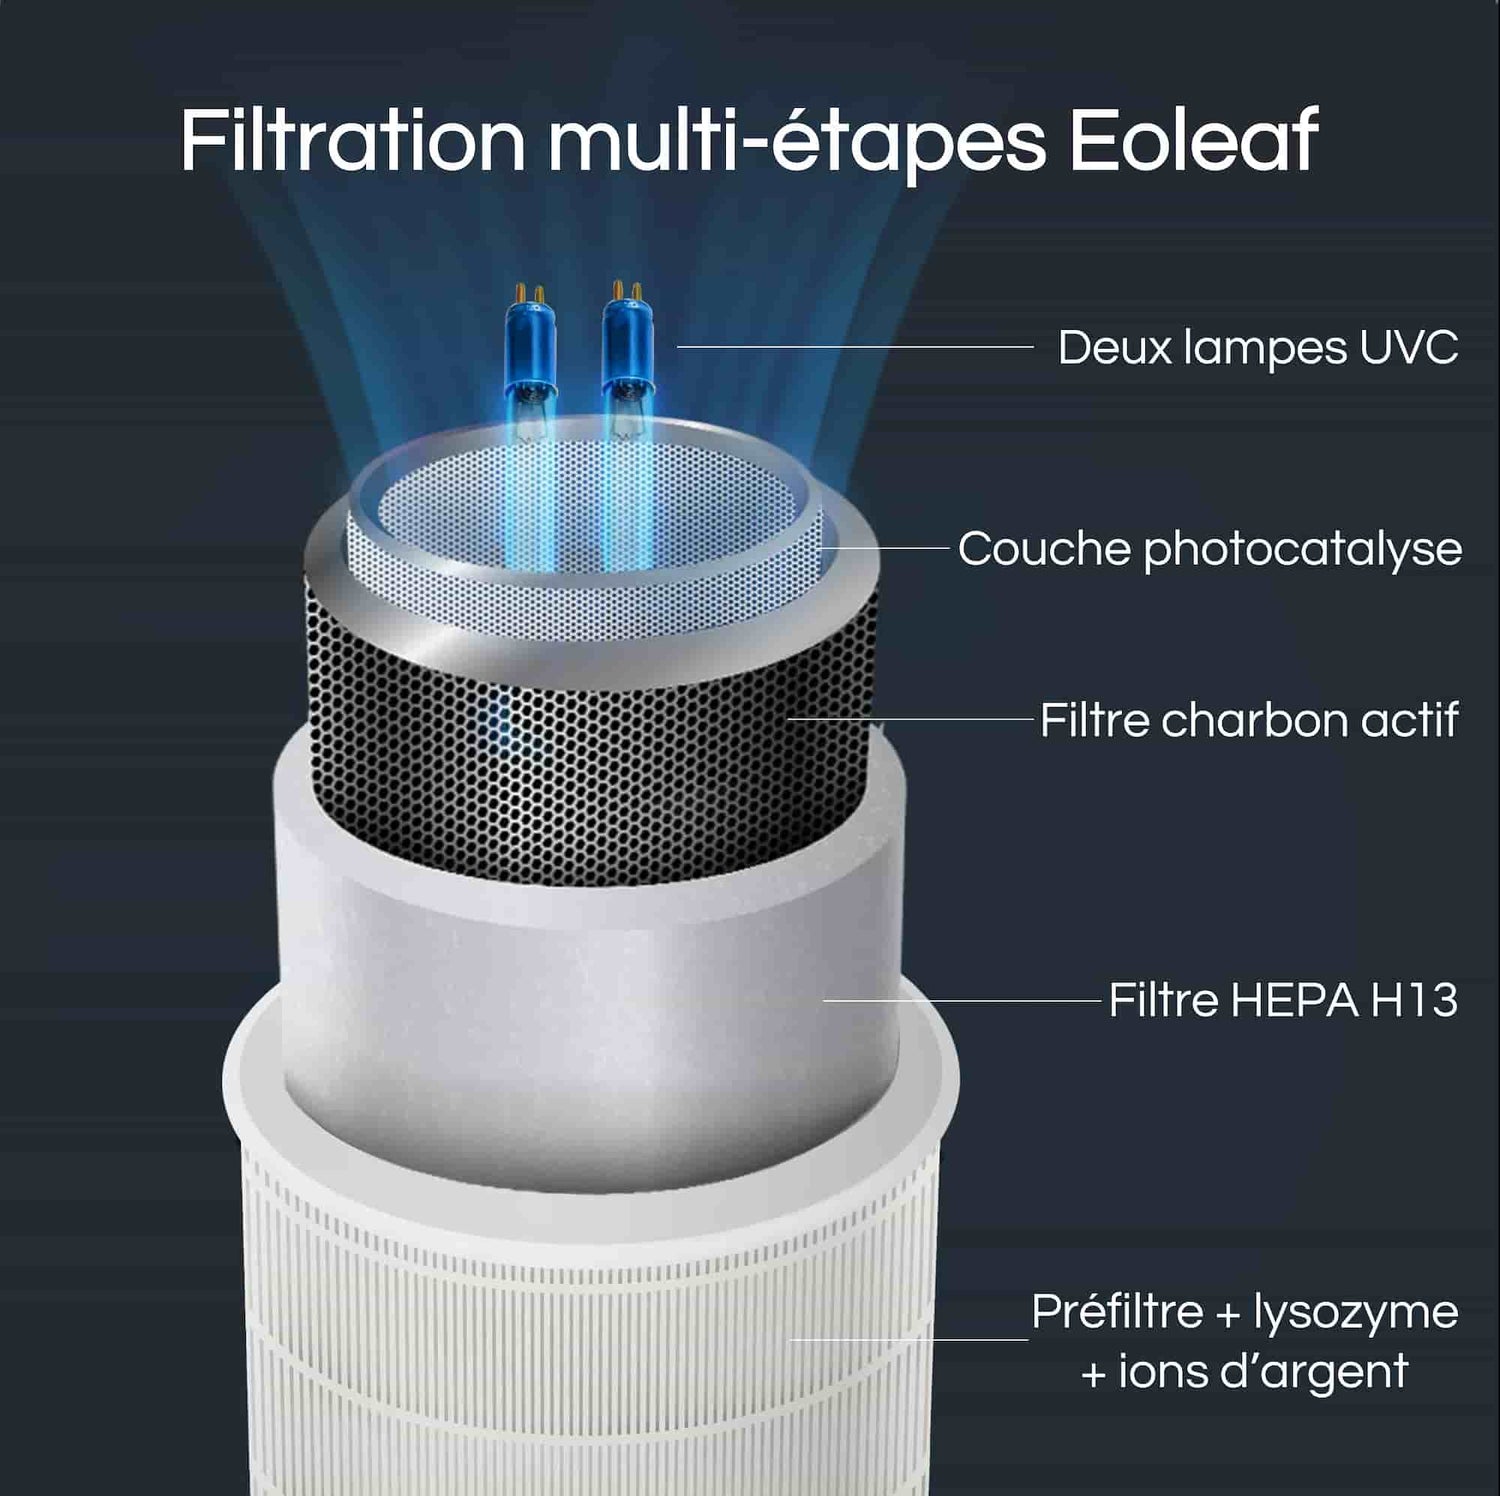 Les purificateurs d'air Eoleaf ont une filtration multi-étapes de qualité médicale 